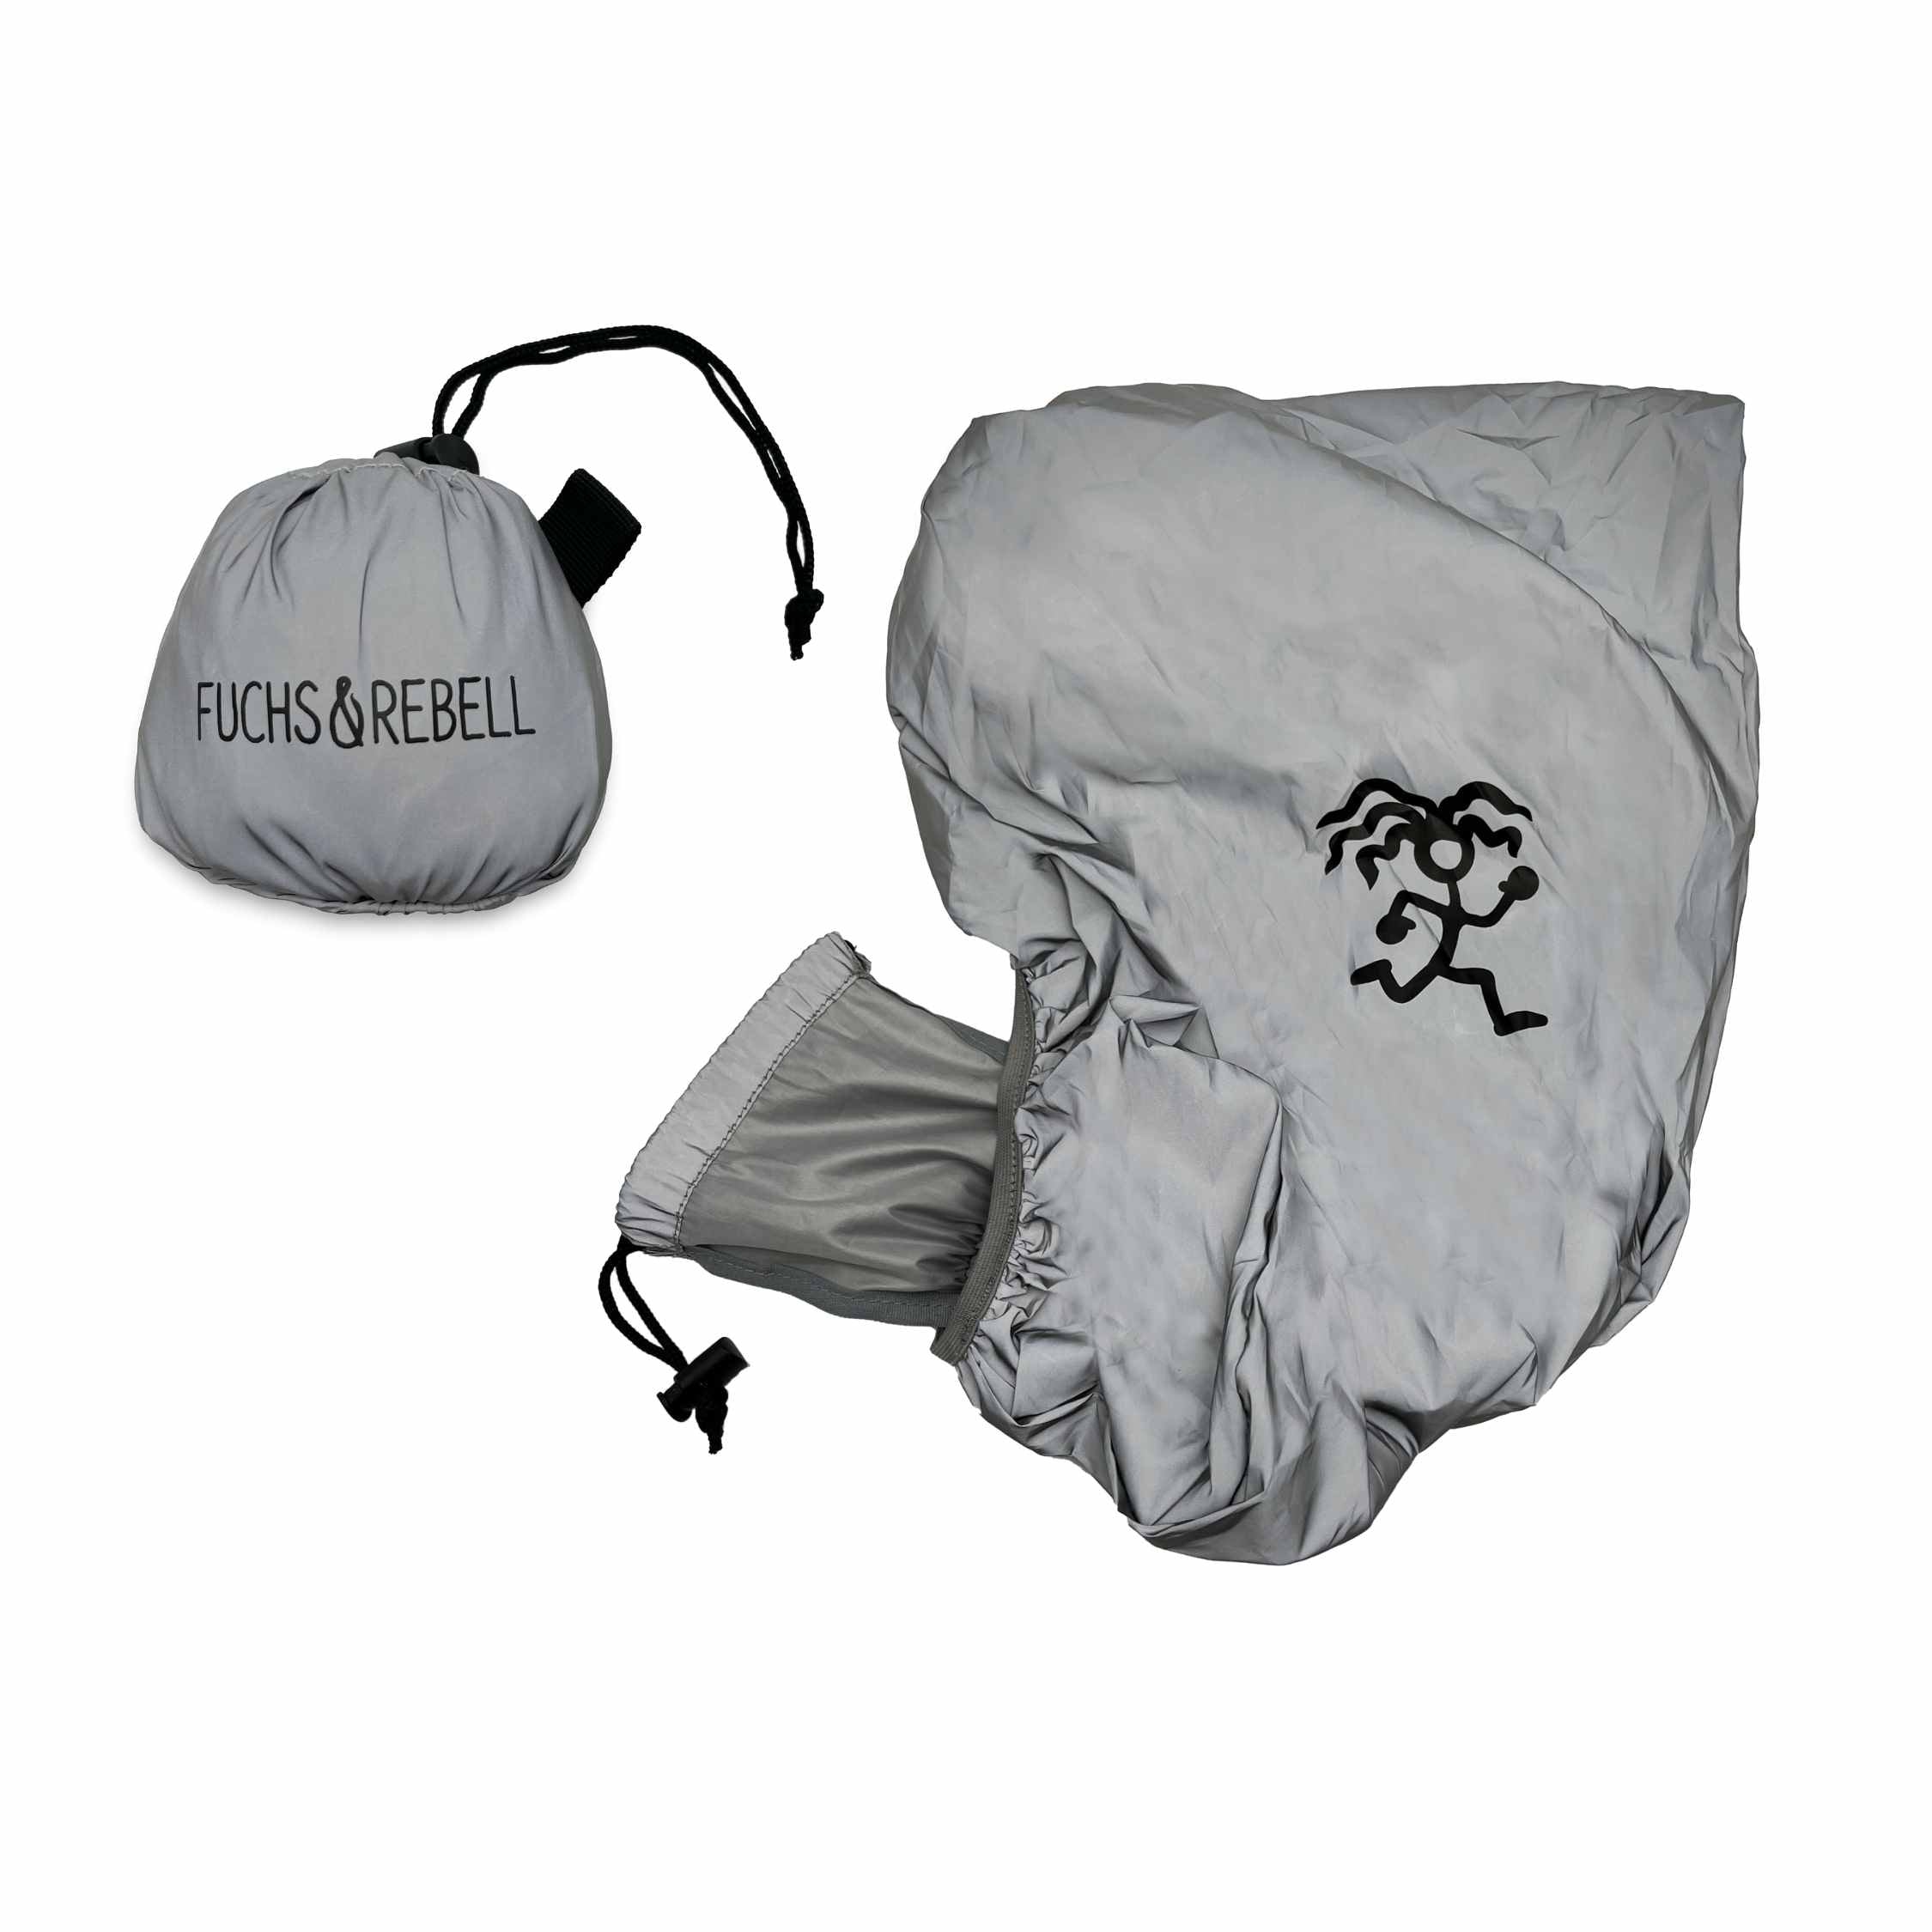 Vollreflektierende Regenschutzhuelle mit schwarzem Logo und integrierter Tasche für mehr Sicherheit im Dunkeln und Schutz vor Regen und Schnee